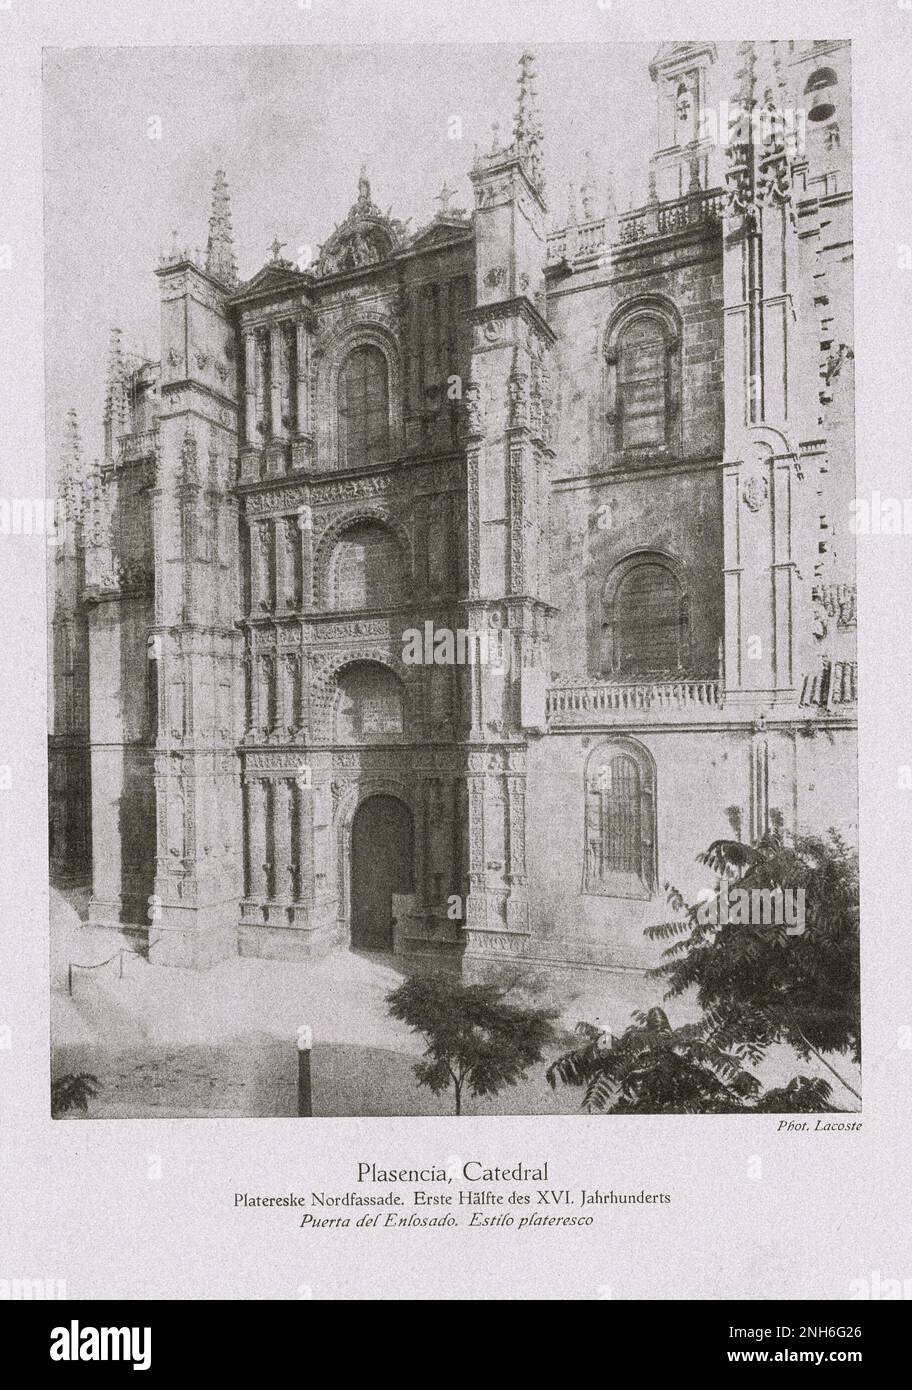 Architektur des alten Spaniens. Vintage-Foto der alten Kathedrale von Plasencia (Catedral de Santa María), einem römisch-katholischen Tempel in der Stadt Plasencia, Provinz Cáceres, Extremadura, Spanien. Die erste Hälfte des 16. Jahrhunderts Stockfoto